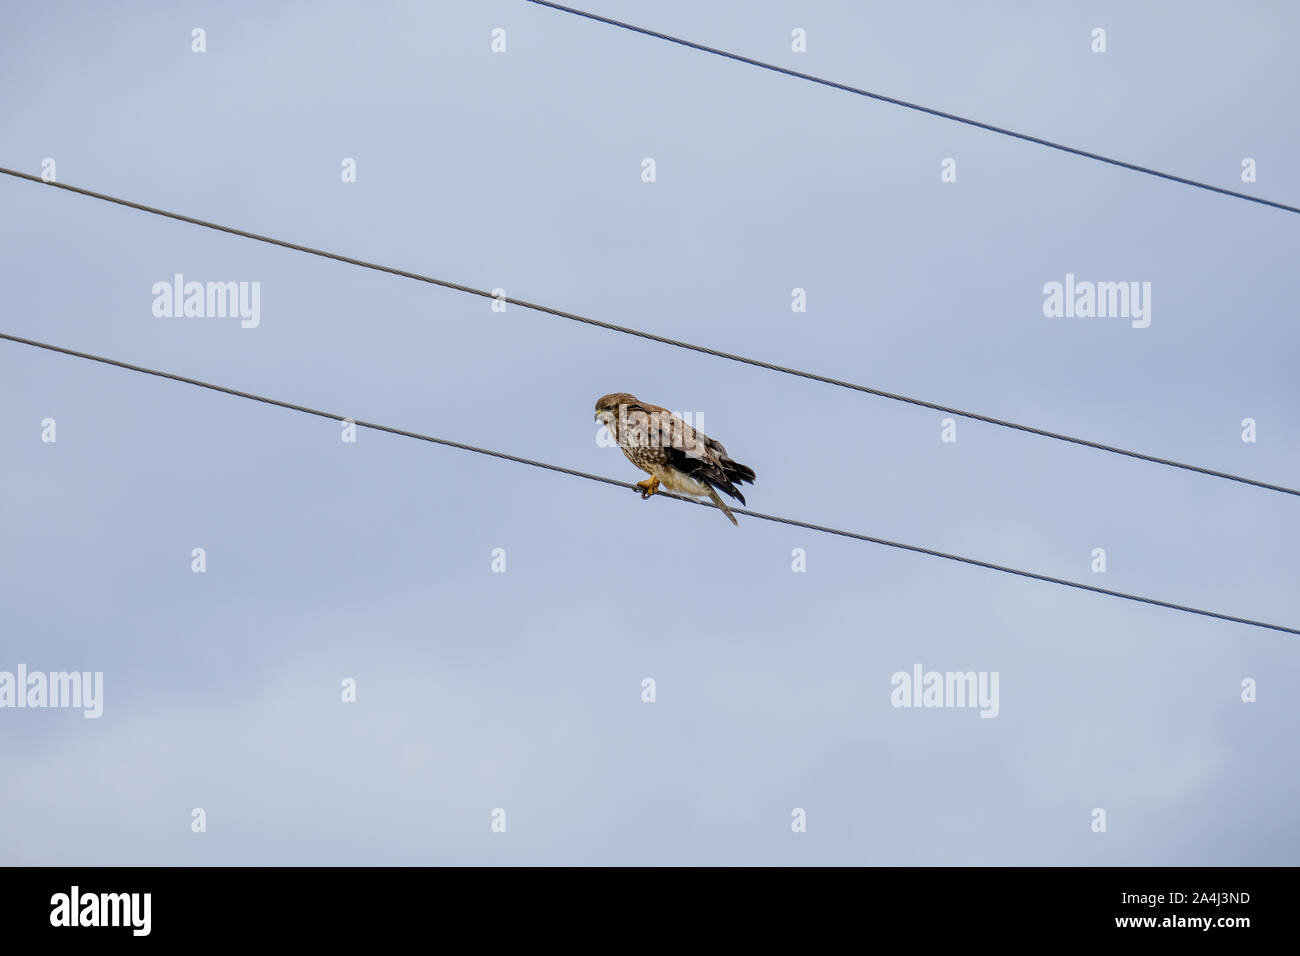 Raubvogel sitzen auf einem elektrischen Draht gegen eine blasse herbst himmel. Ein Vogel auf Kabel sieht aus wie eine musikalische Note in einer Partitur. Der Predator ist auf der Suche nach Stockfoto